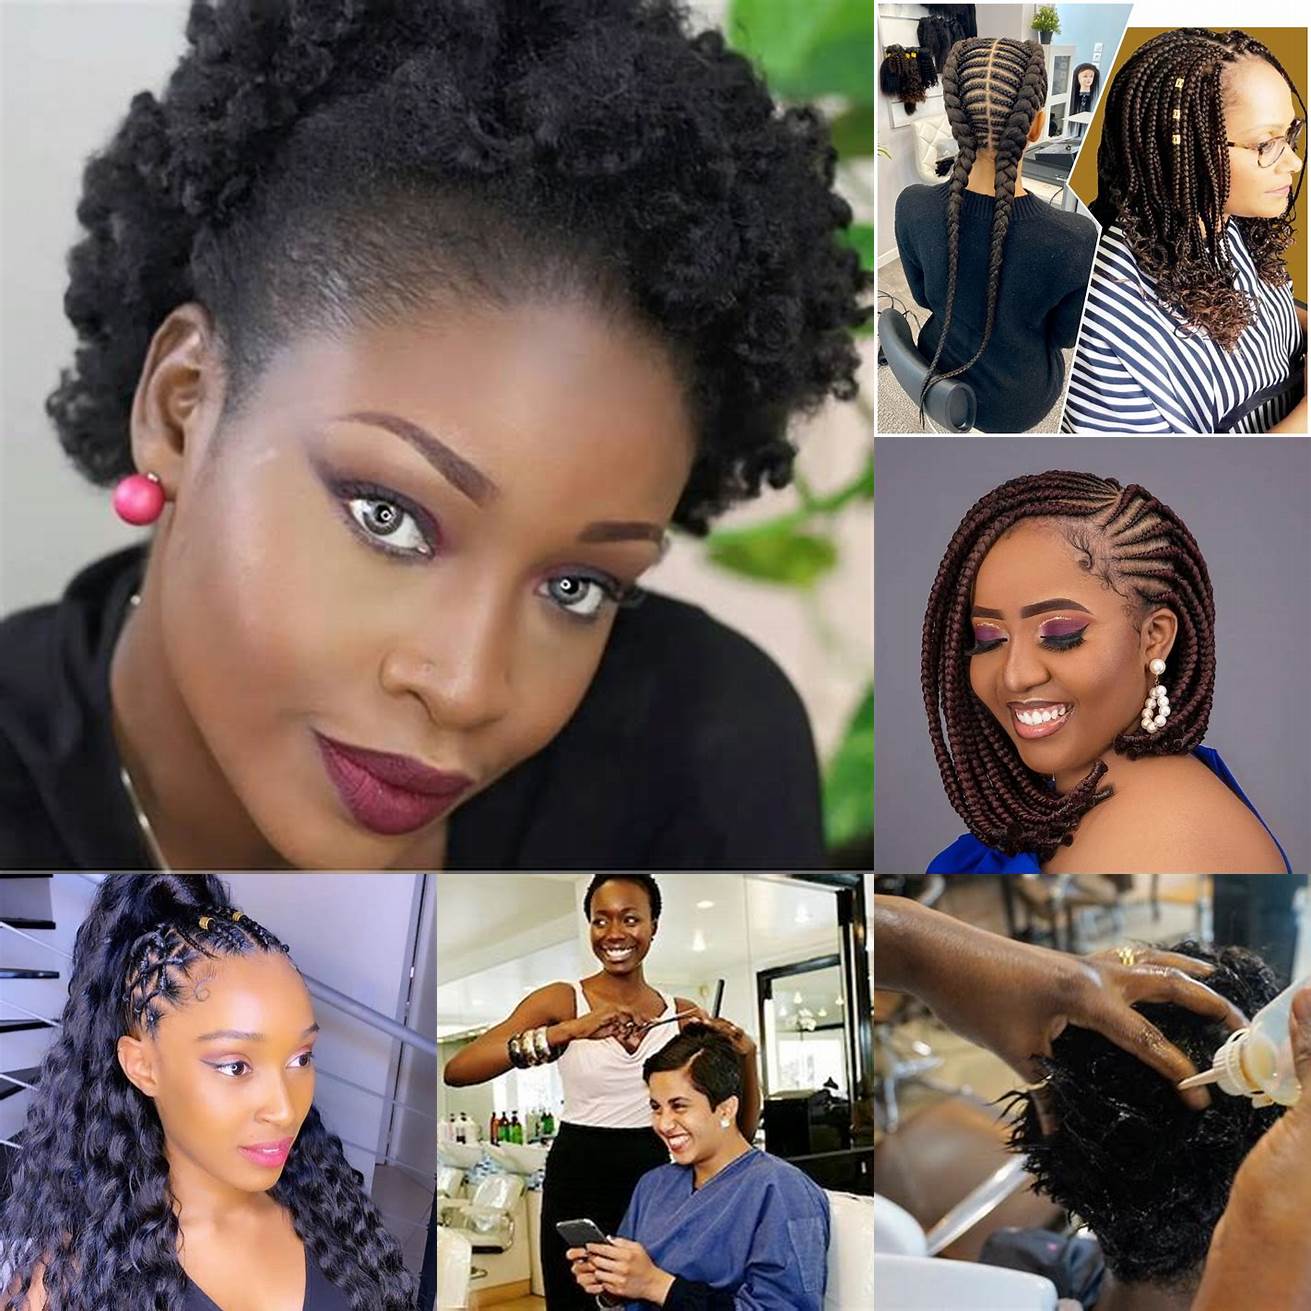 Salon Beauty Hair Ce salon propose des coiffures afro pour femmes et hommes ainsi que des soins capillaires et des produits de qualité Le personnel est accueillant et compétent